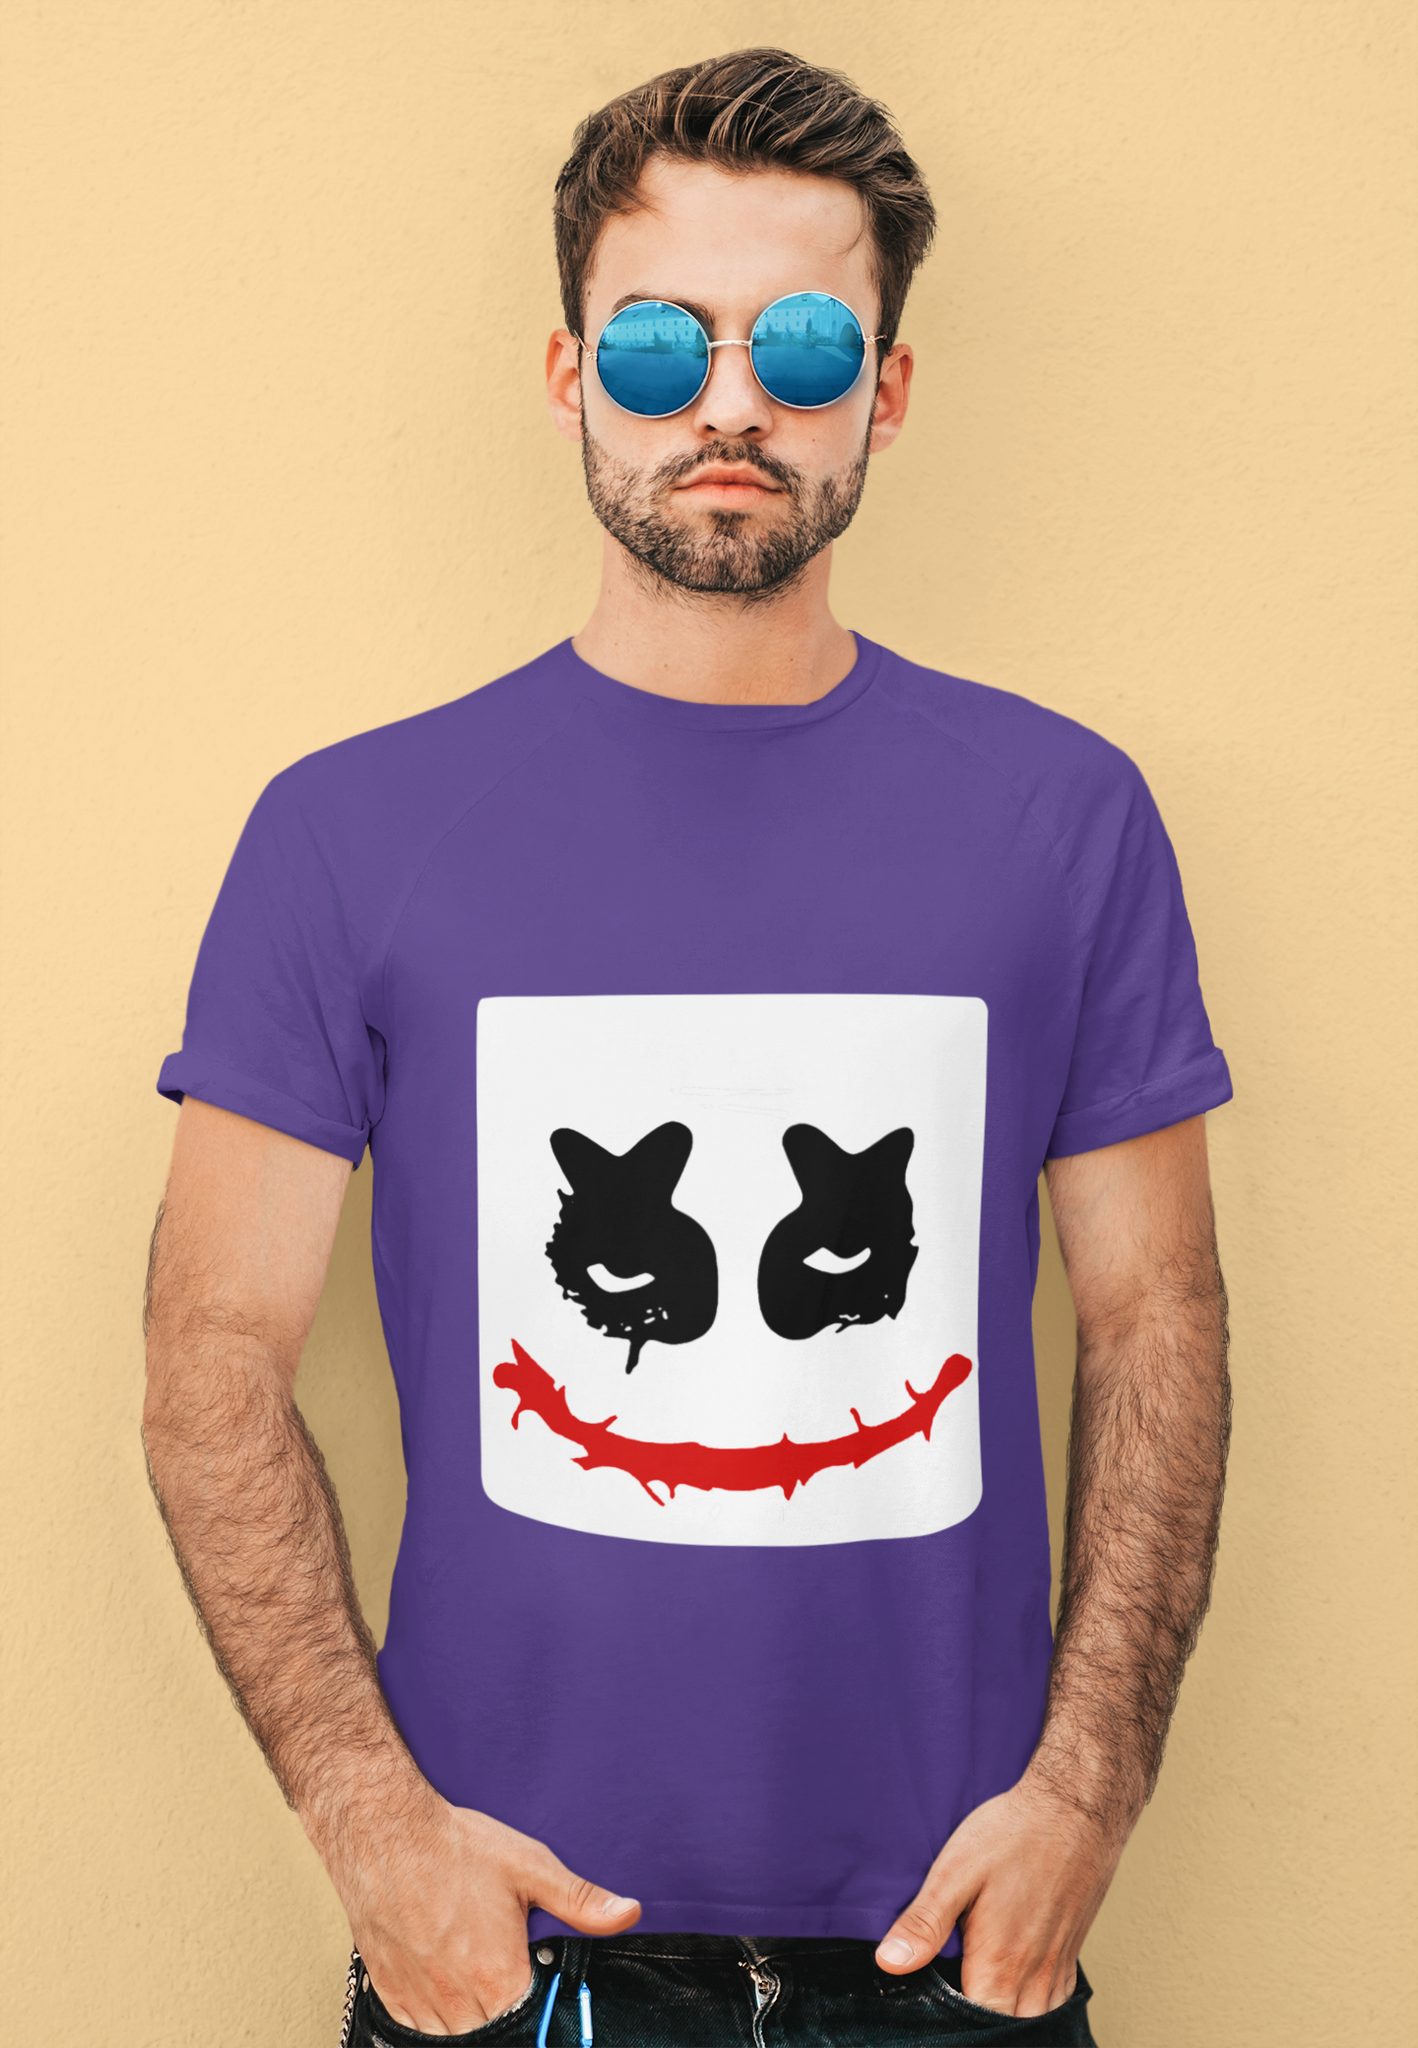 Joker T Shirt, Joker Face Tshirt, Halloween Gifts